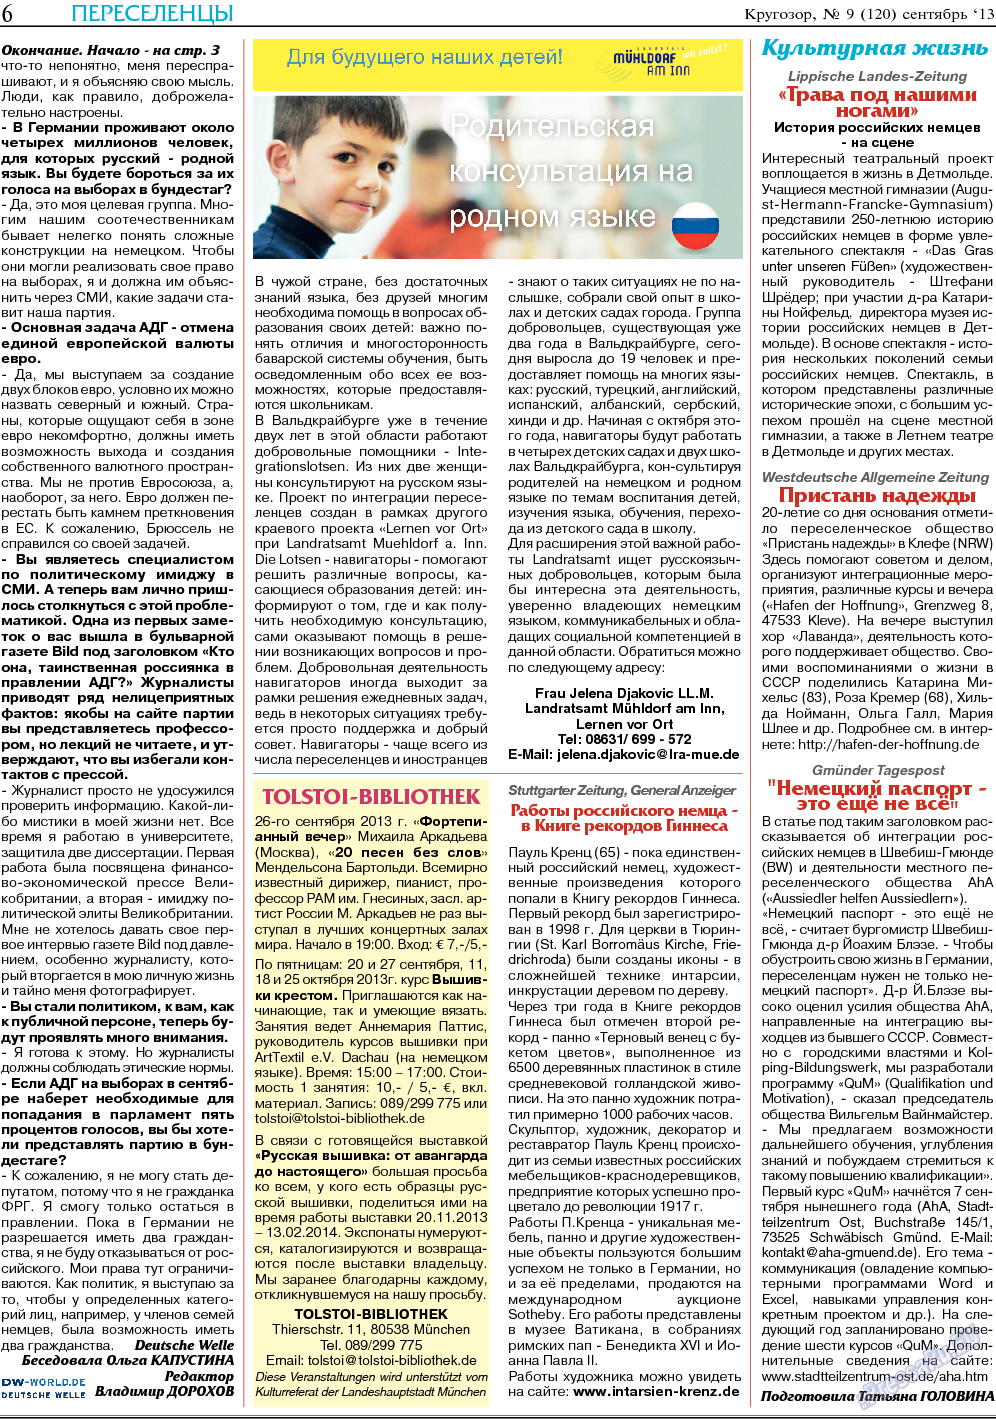 Кругозор, газета. 2013 №9 стр.6